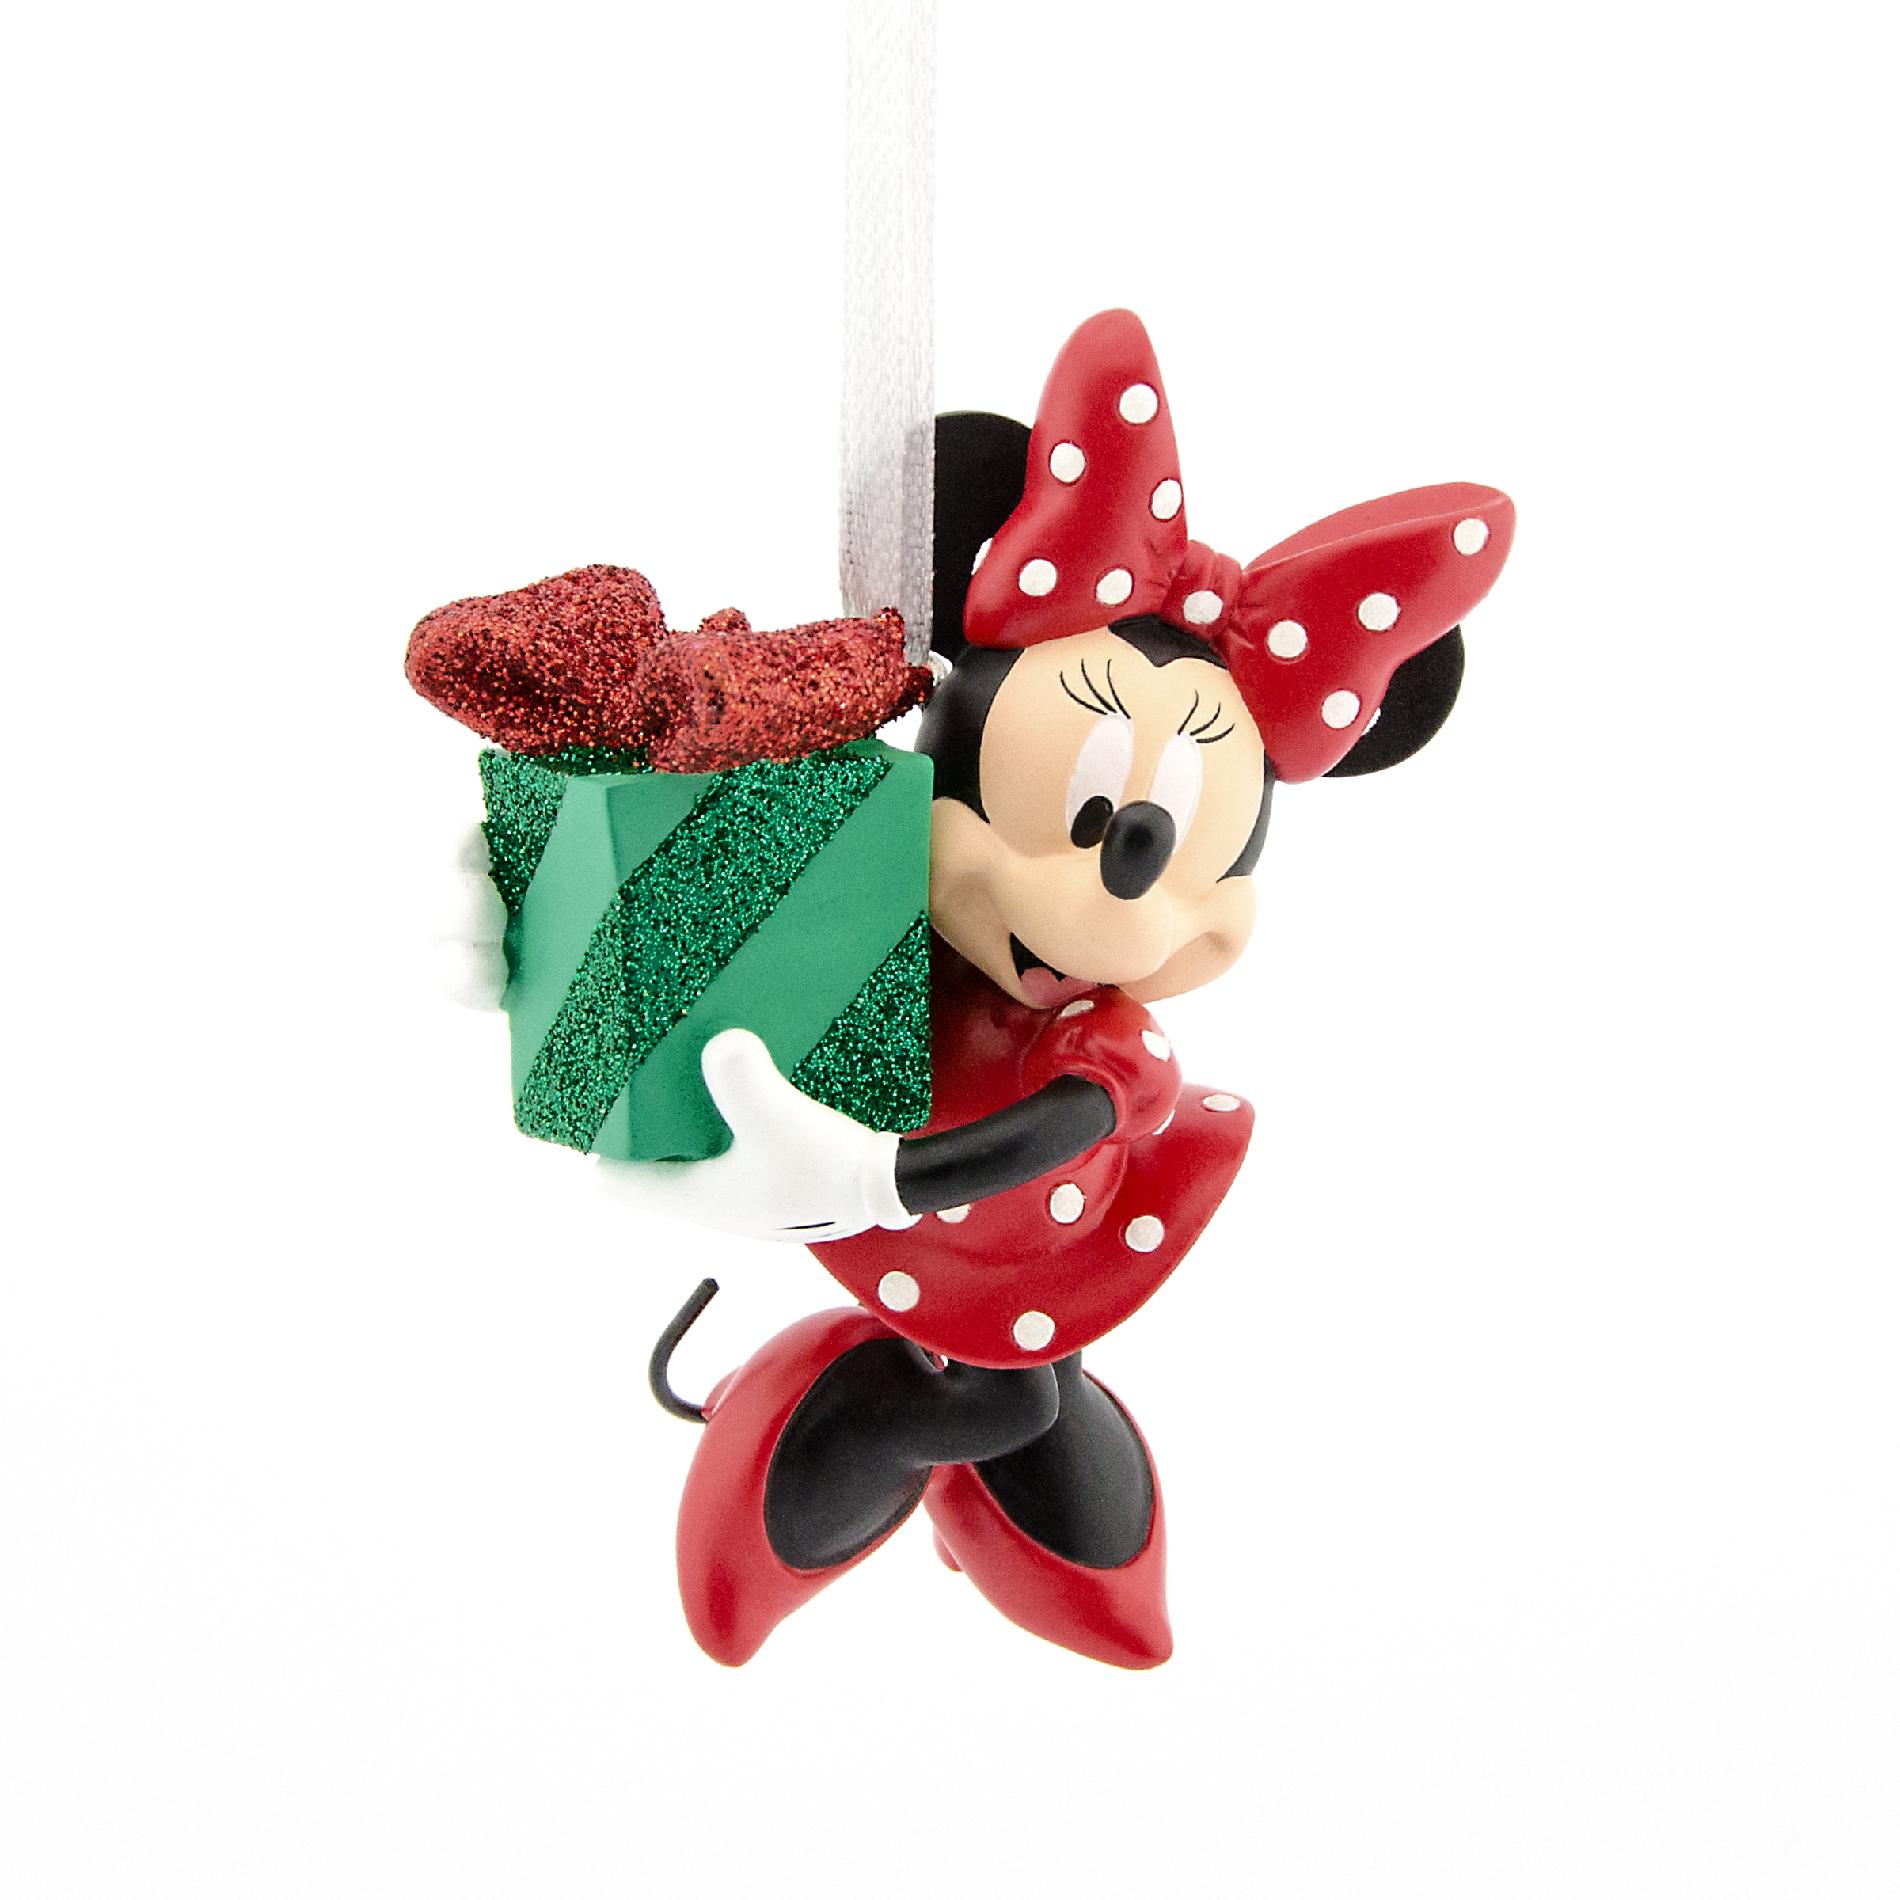 Disney Hallmark Minnie Mouse Christmas Ornament